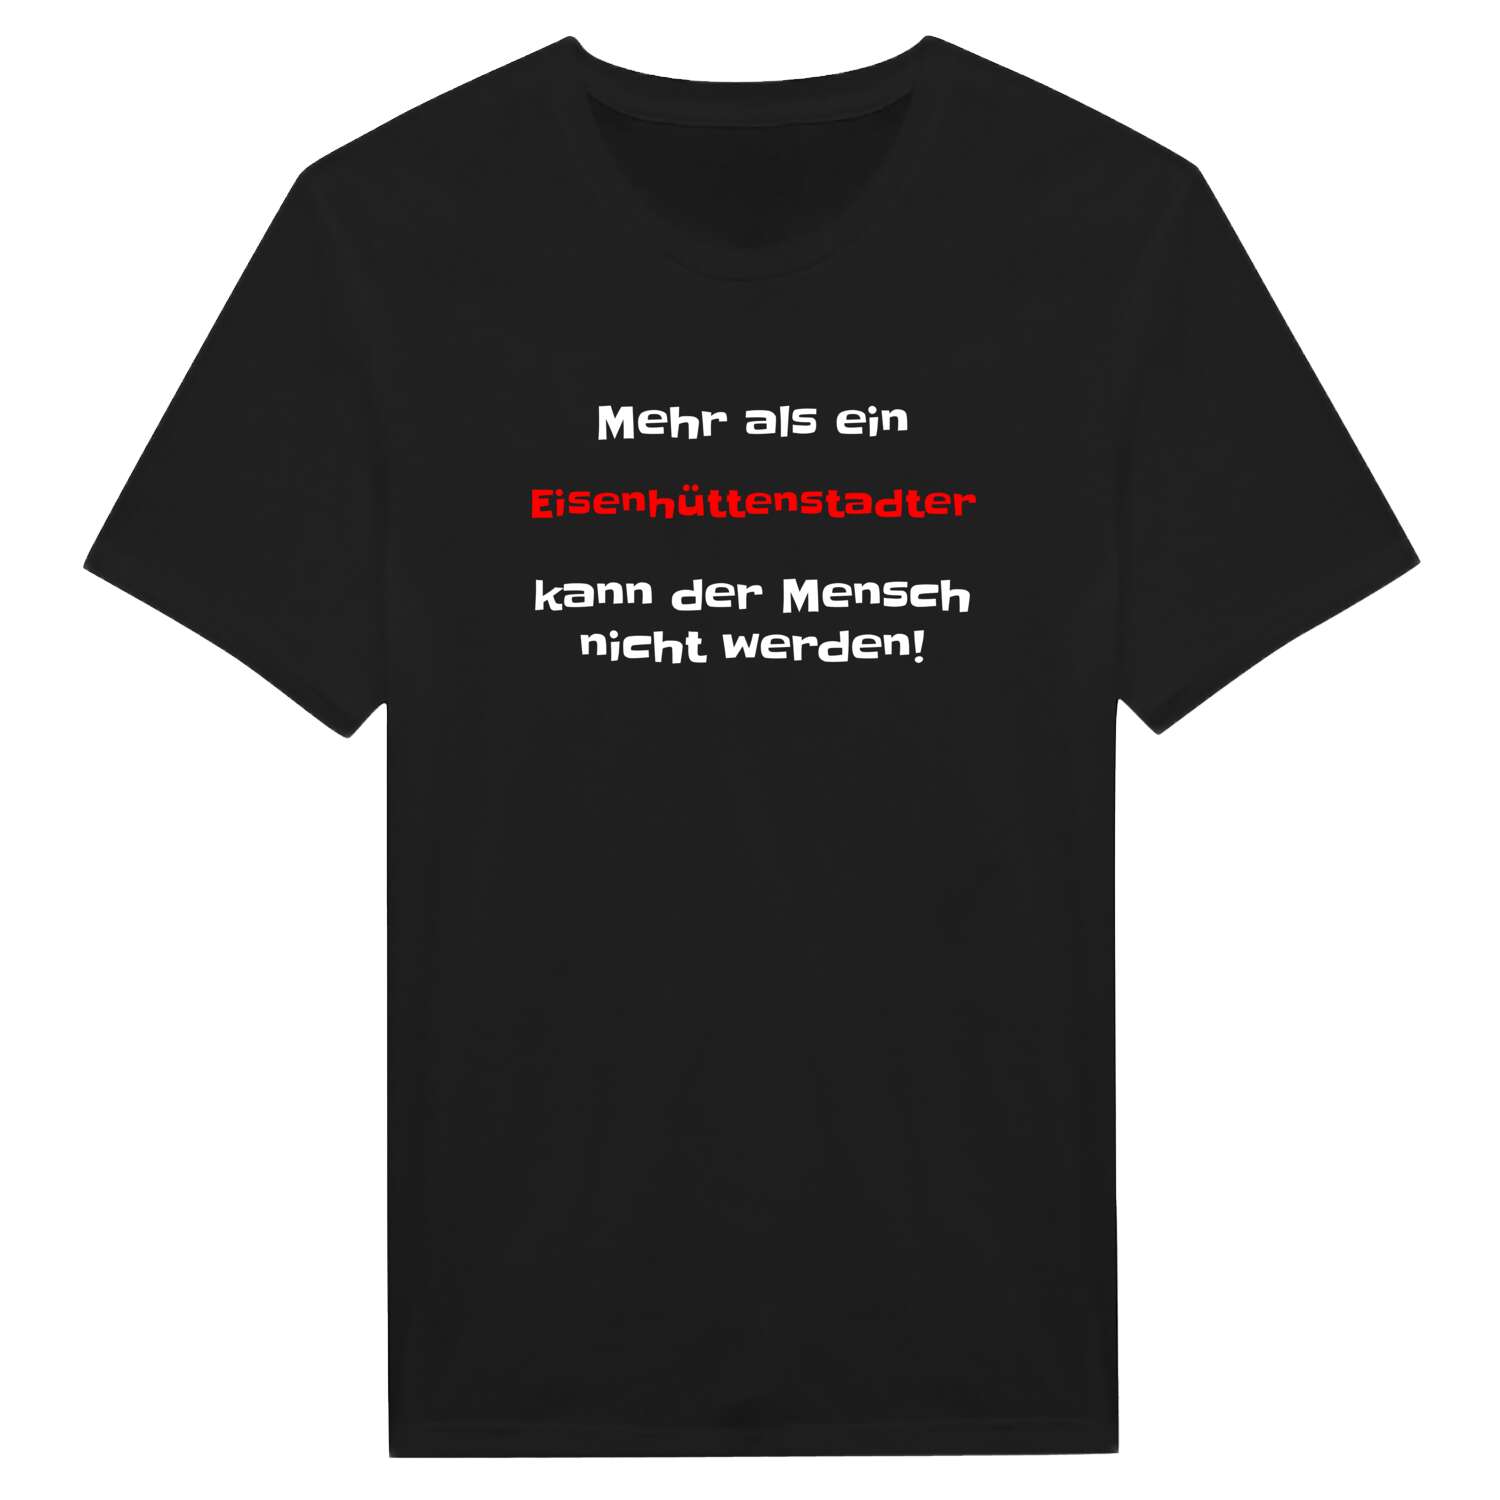 Eisenhüttenstadt T-Shirt »Mehr als ein«